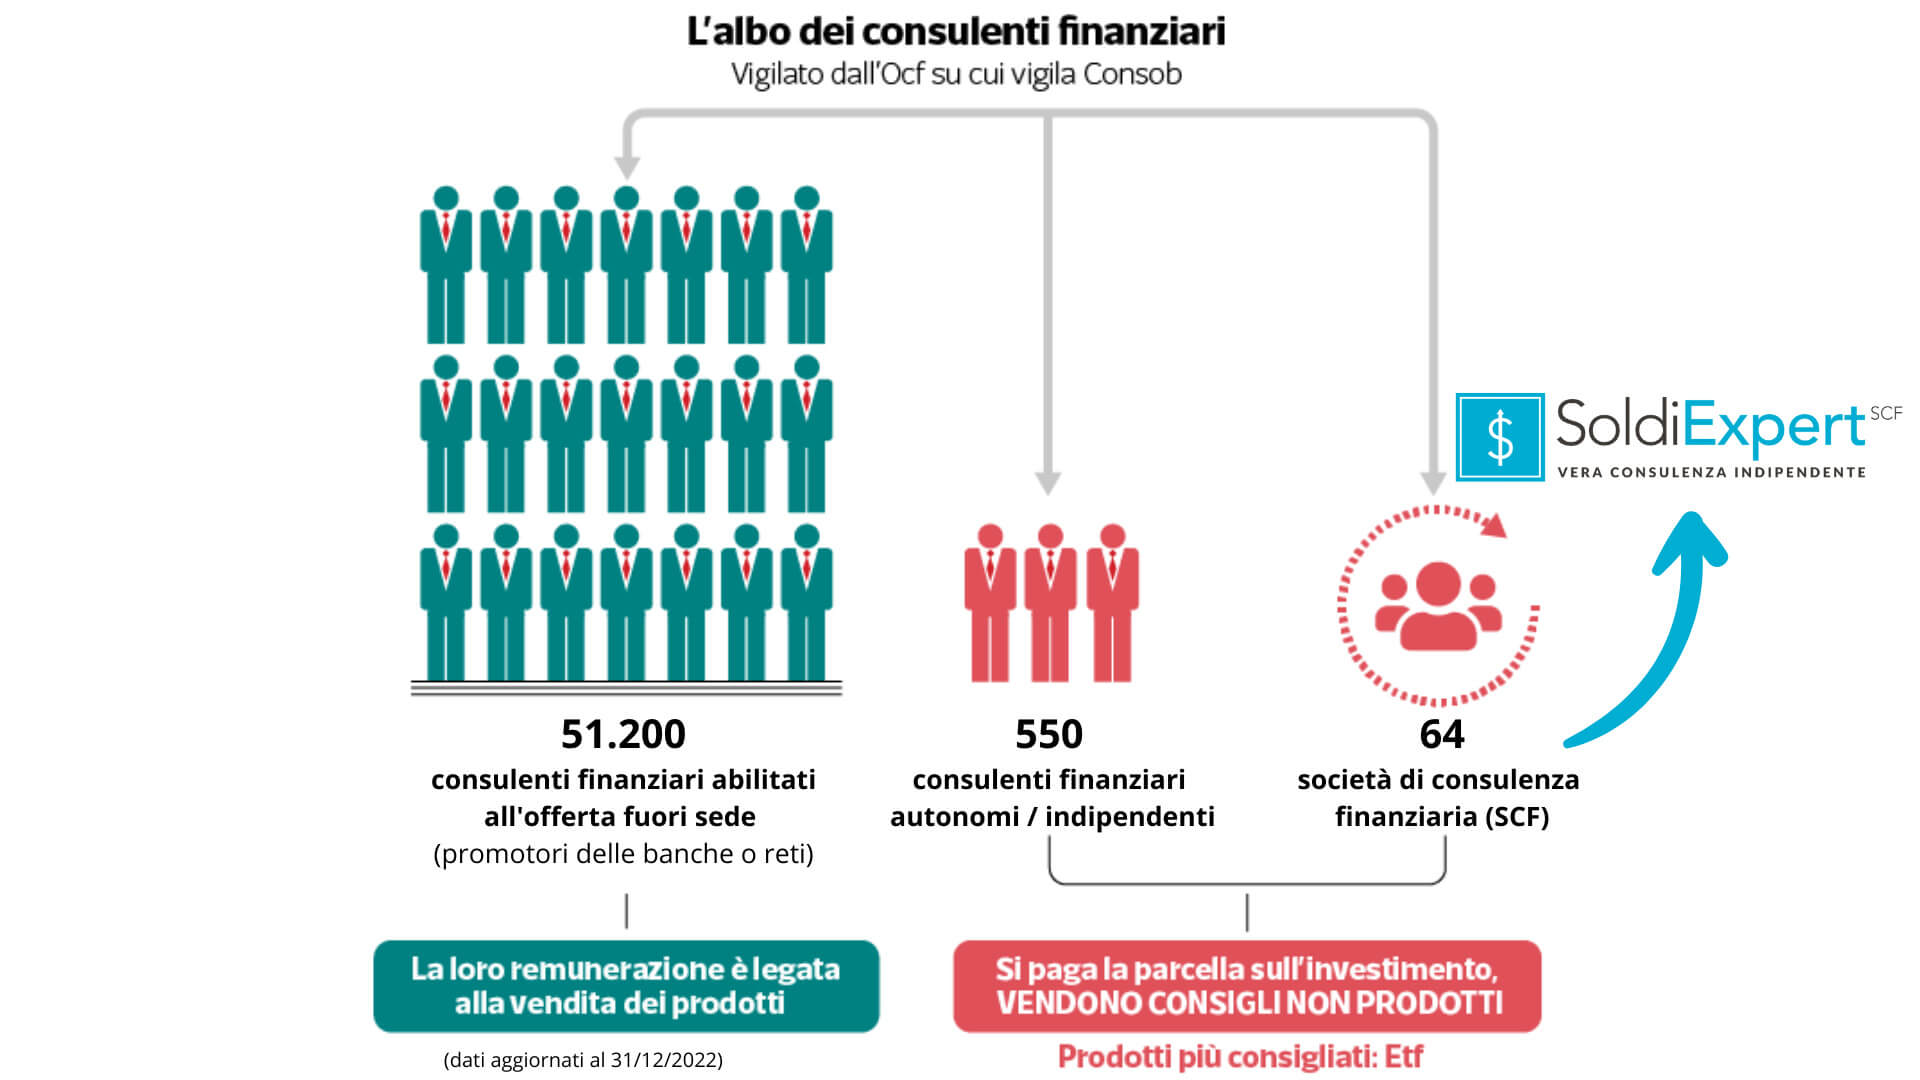 I consulenti finanziaria in Italia